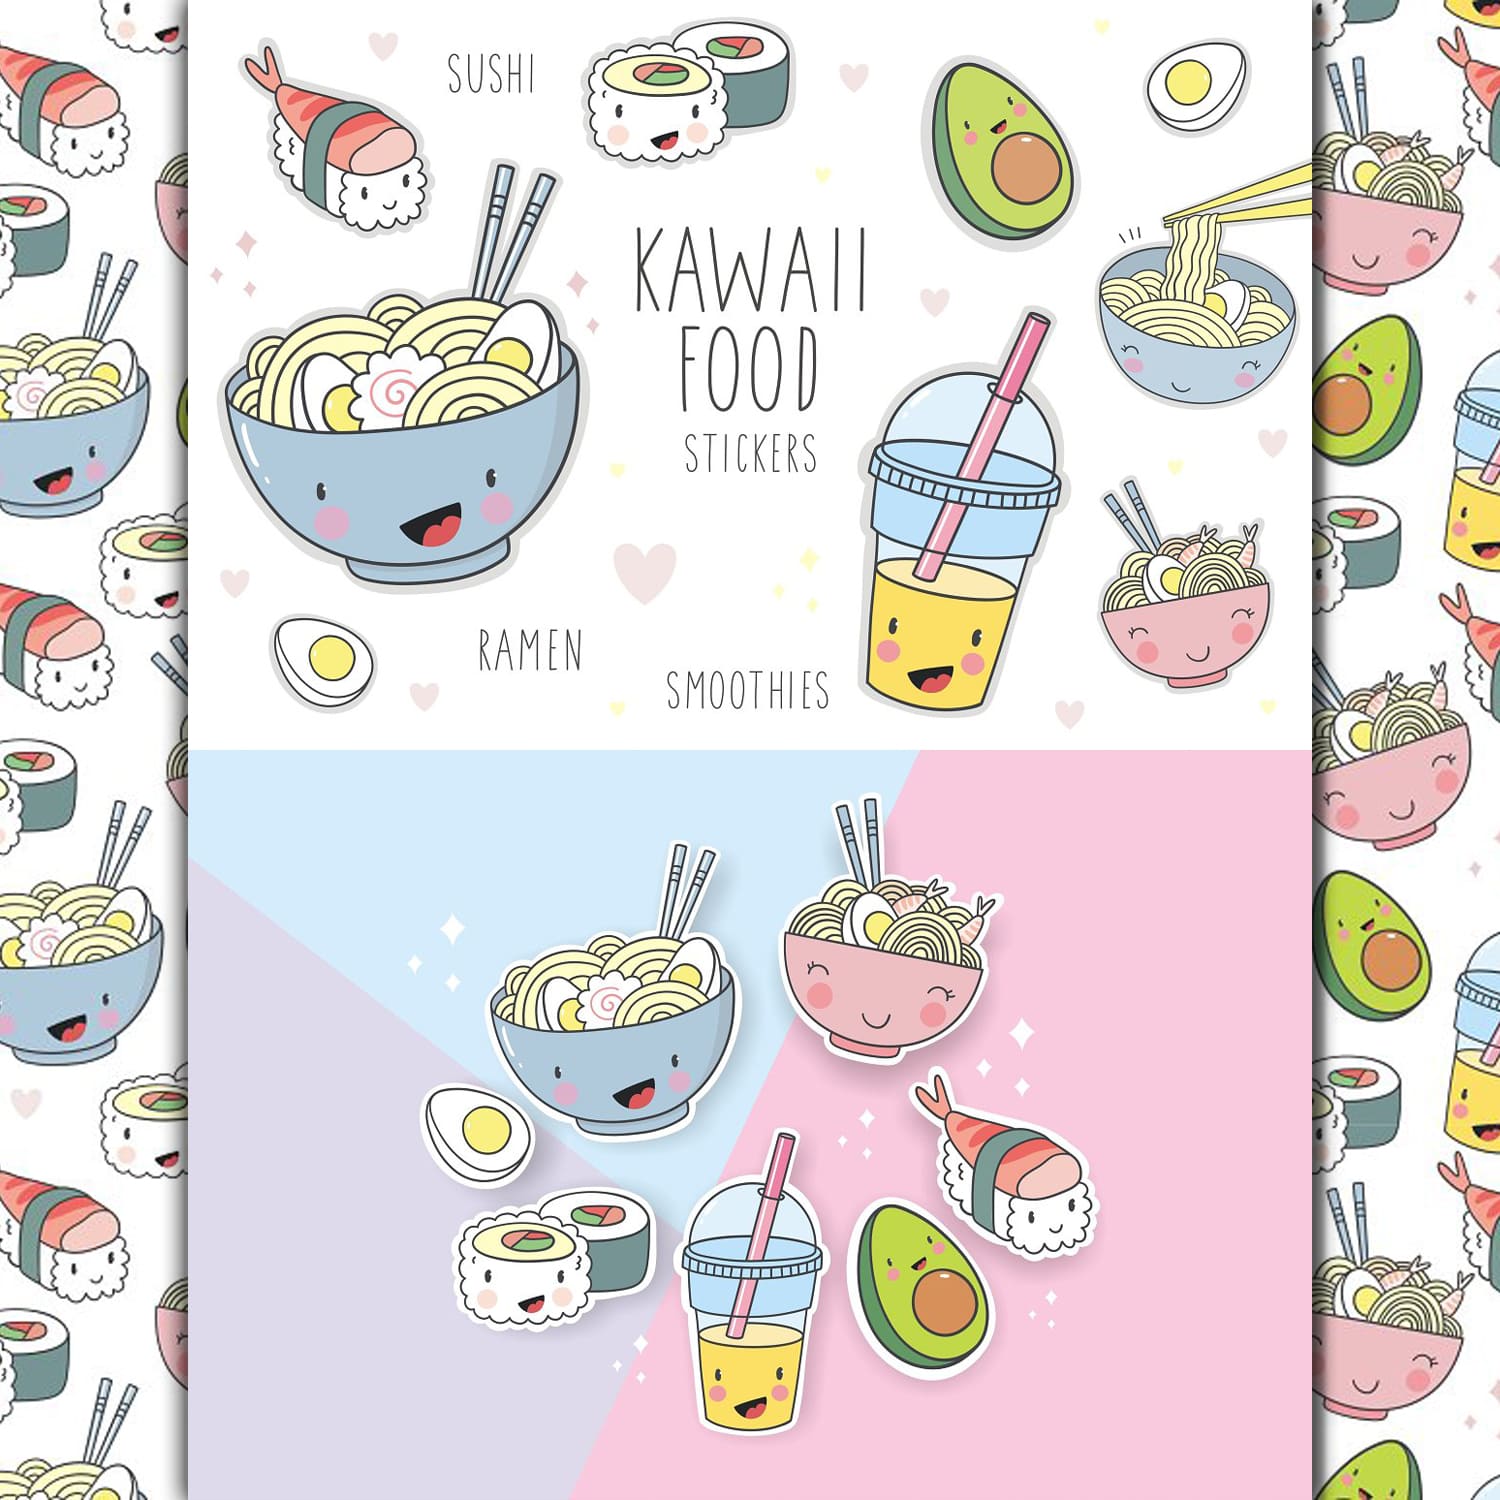 Kawaii cartoon food stickers.